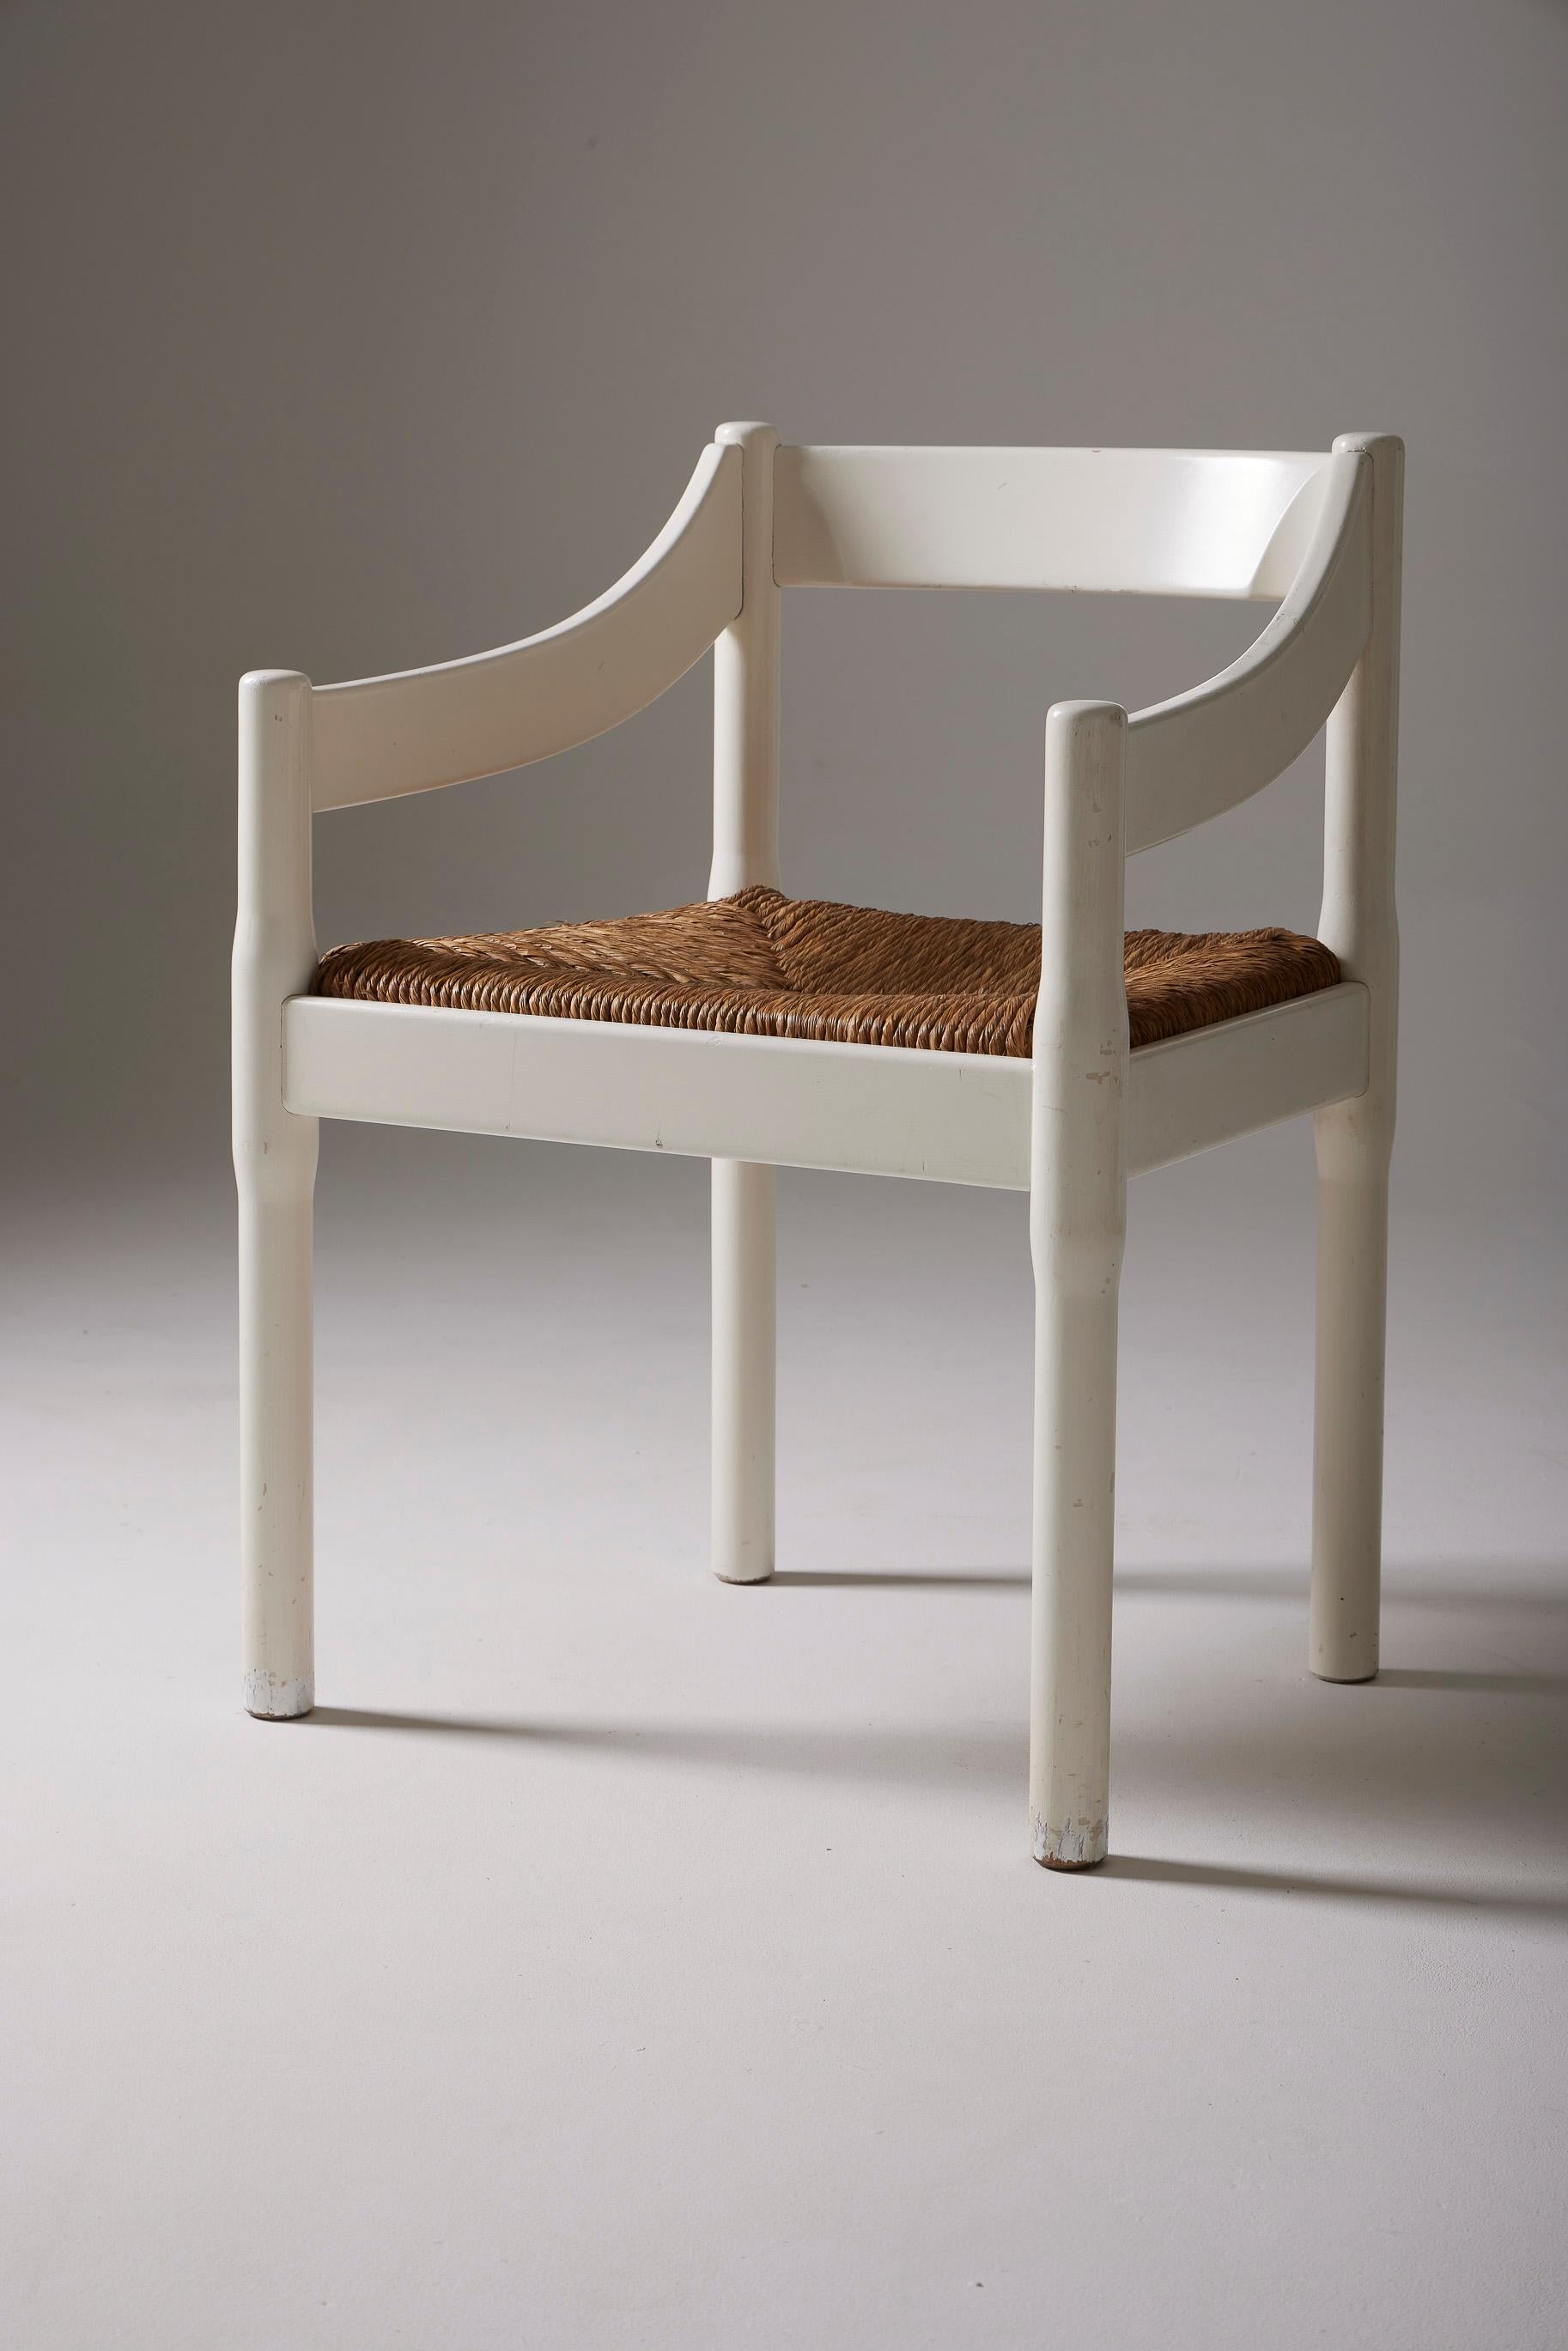 Modèle de chaise Carimate réalisé par le grand designer italien Vico Magistretti à la fin des années 1950 (1959). La structure de la chaise est en bois laqué blanc et l'assise est en paille. De discrètes marques d'usage ornent les meubles,